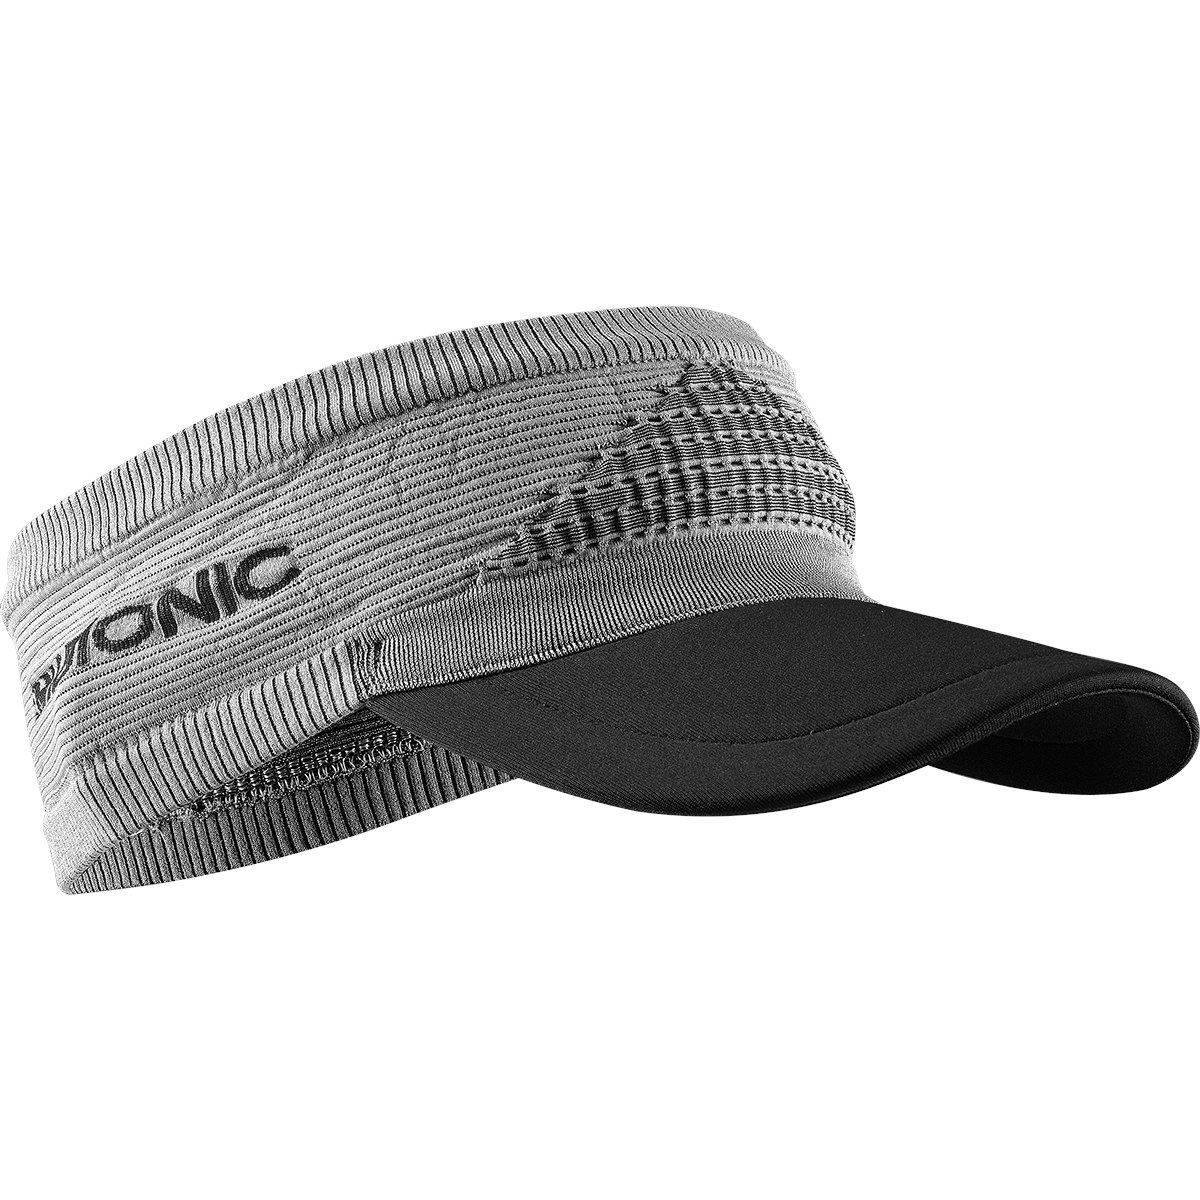 Produktbild von X-Bionic Fennec 4.0 Headband mit Schild - anthracite/silver